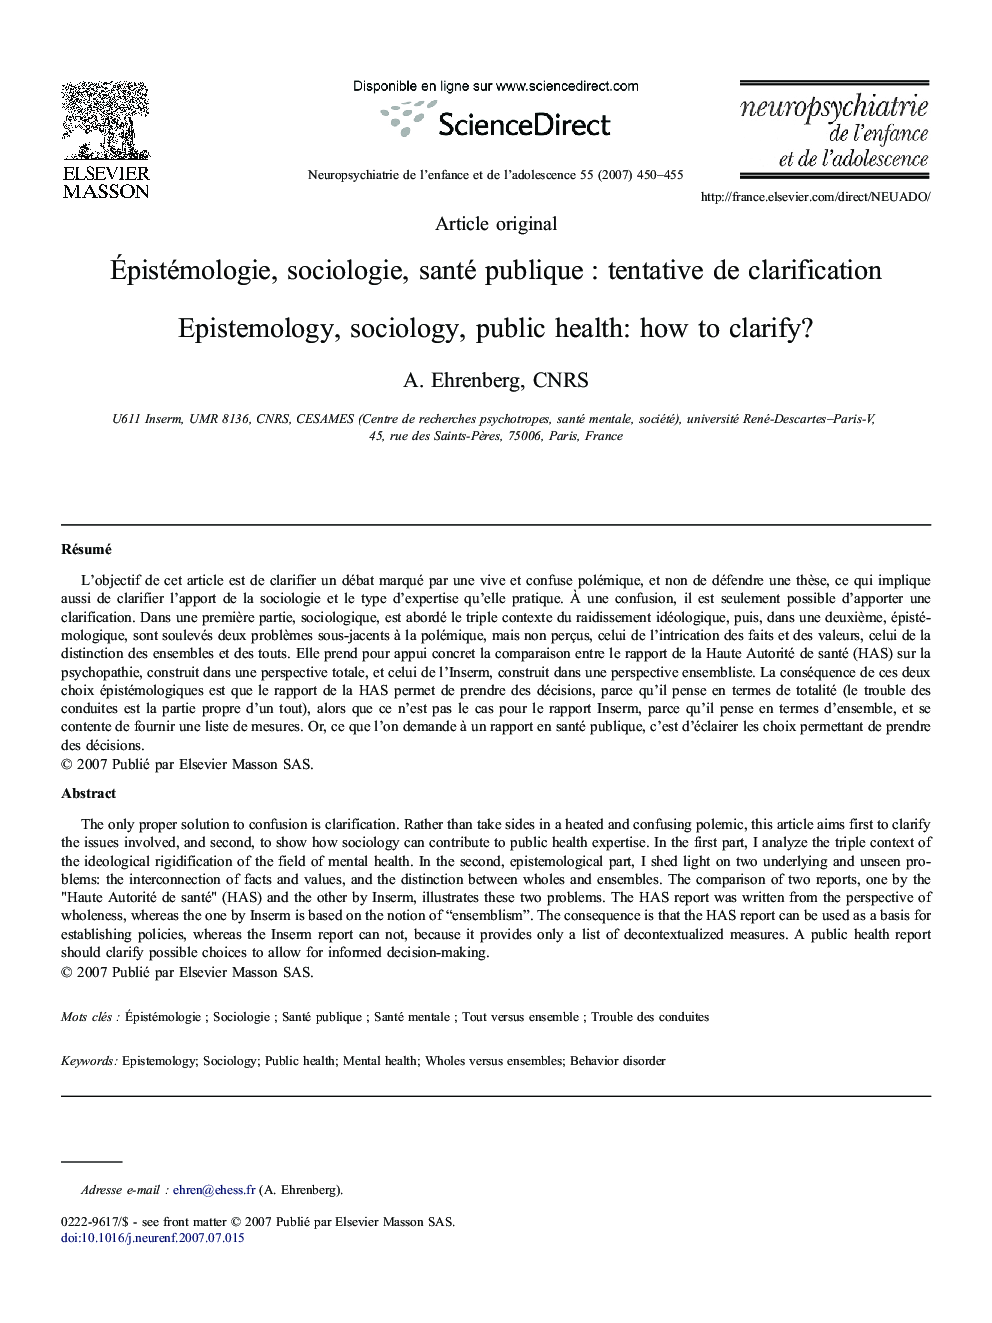 Épistémologie, sociologie, santé publique : tentative de clarification